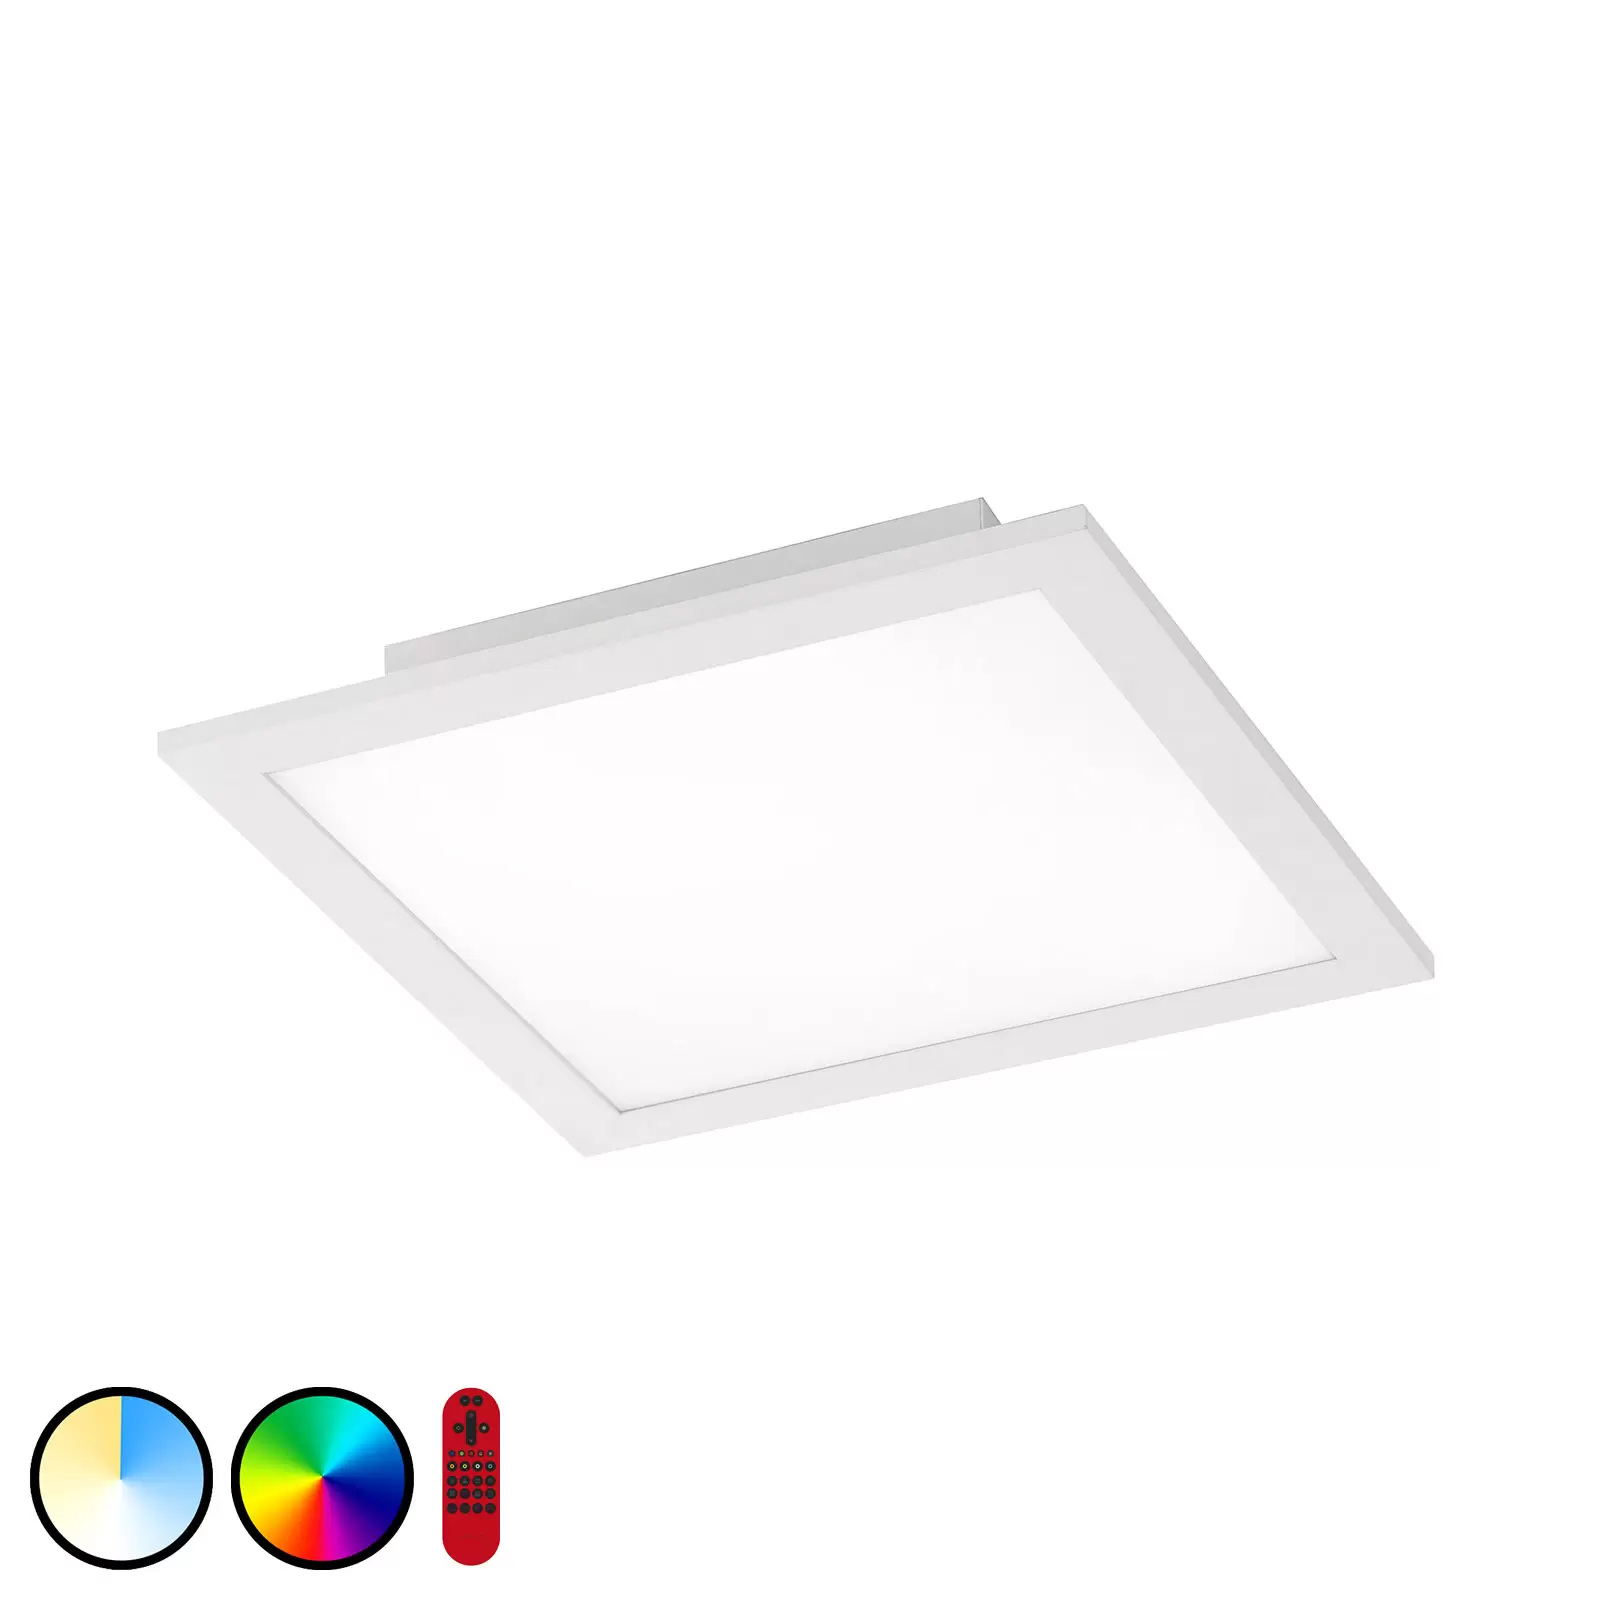 Panneau lumineux LED Q-Flat 45 x 45cm 4000K blanc